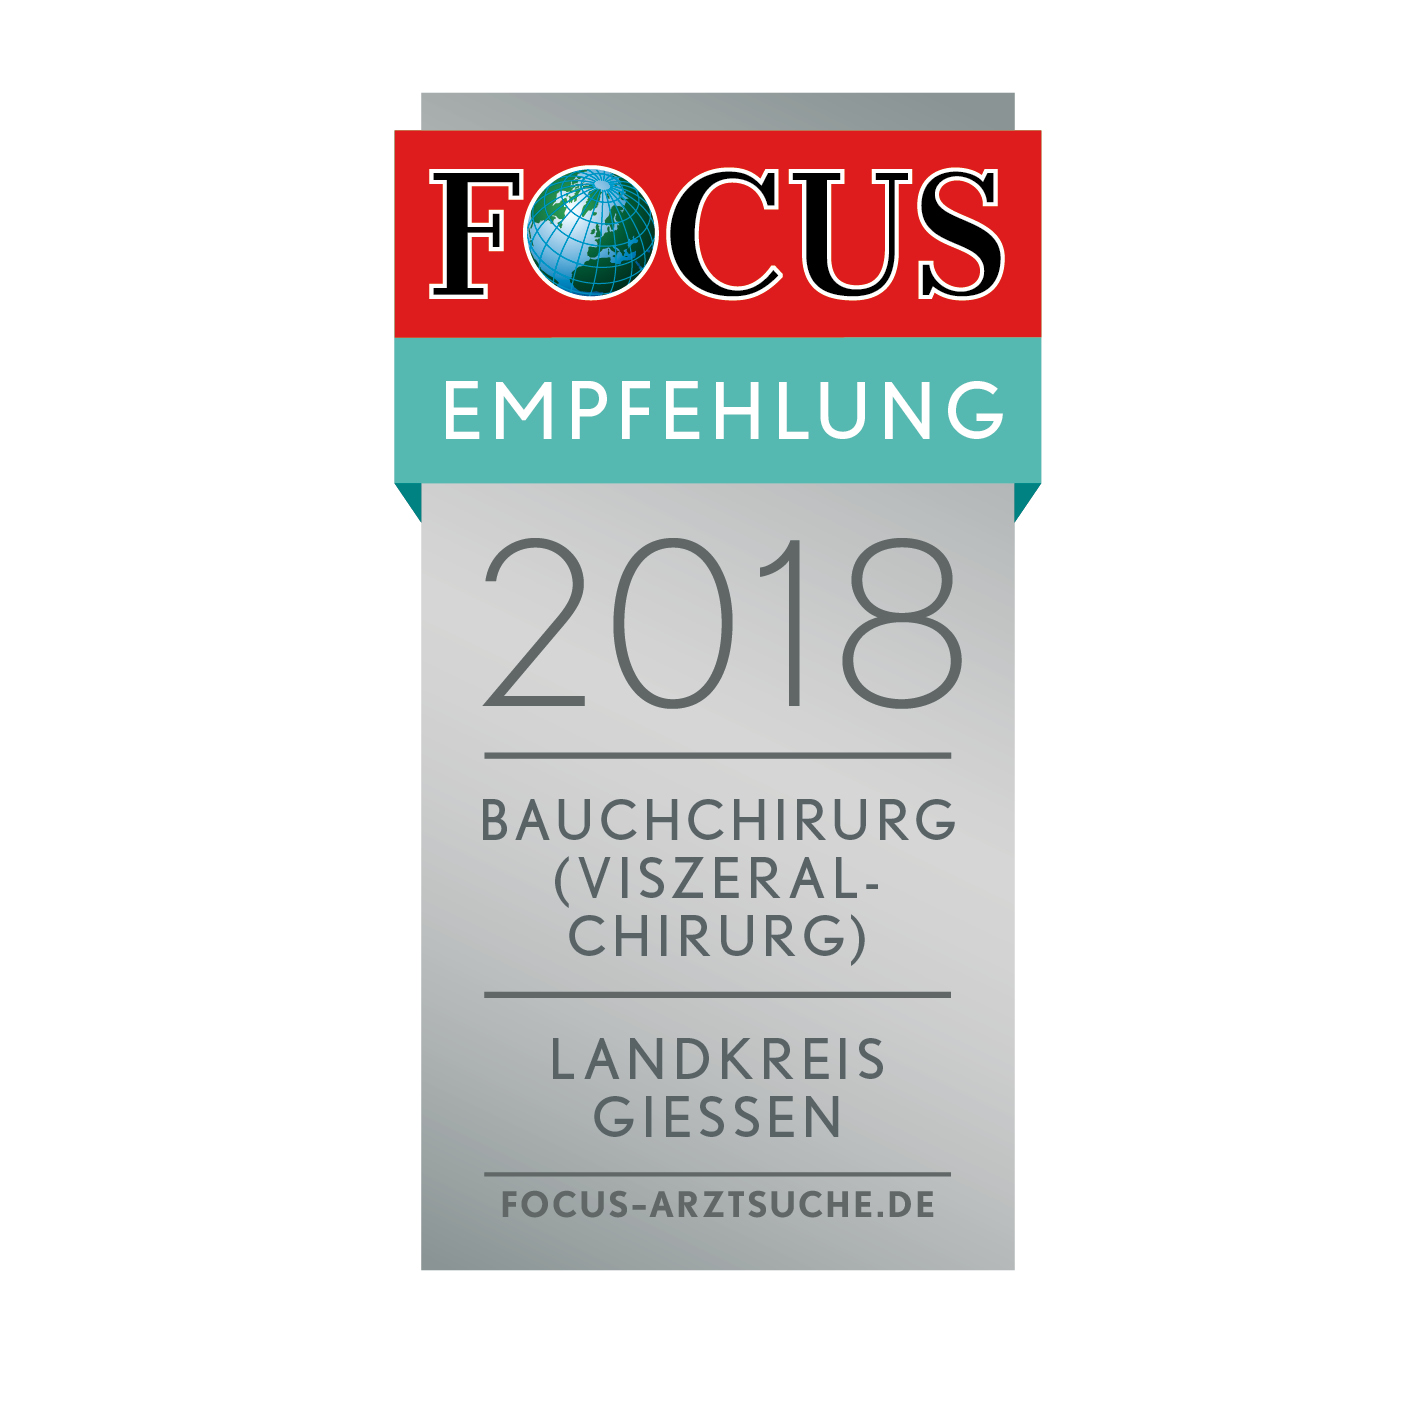 Focus Bauchchirurgie Landkreis Gießen